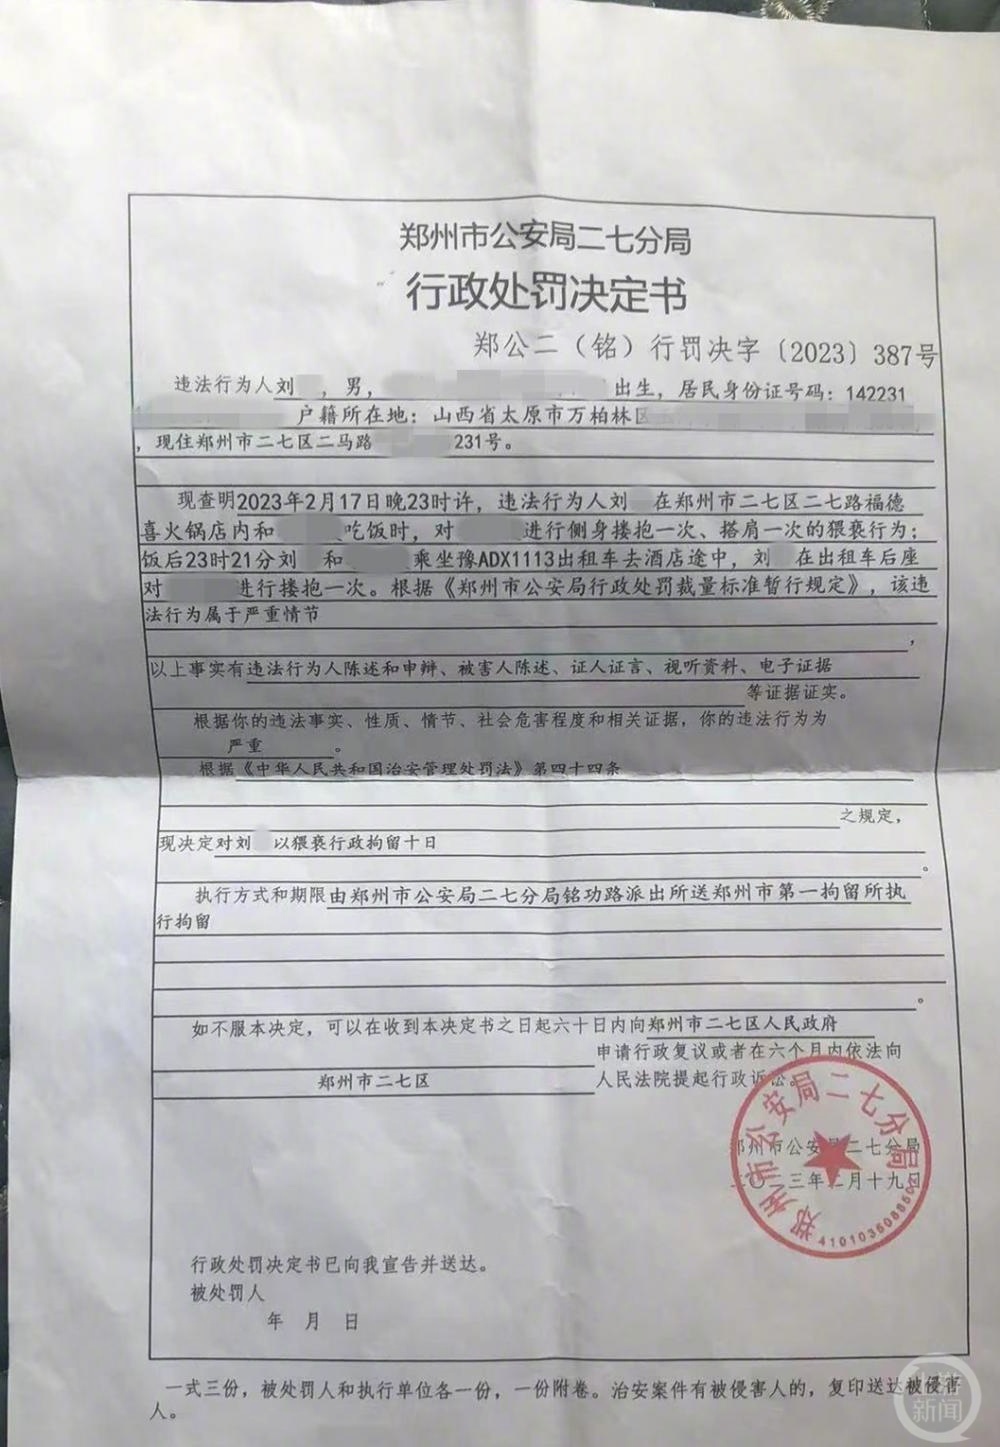 從山西到鄭州辦案的民警劉某涉嫌猥褻，被鄭州市公安局二七分局處以行政行政拘留10日。網圖